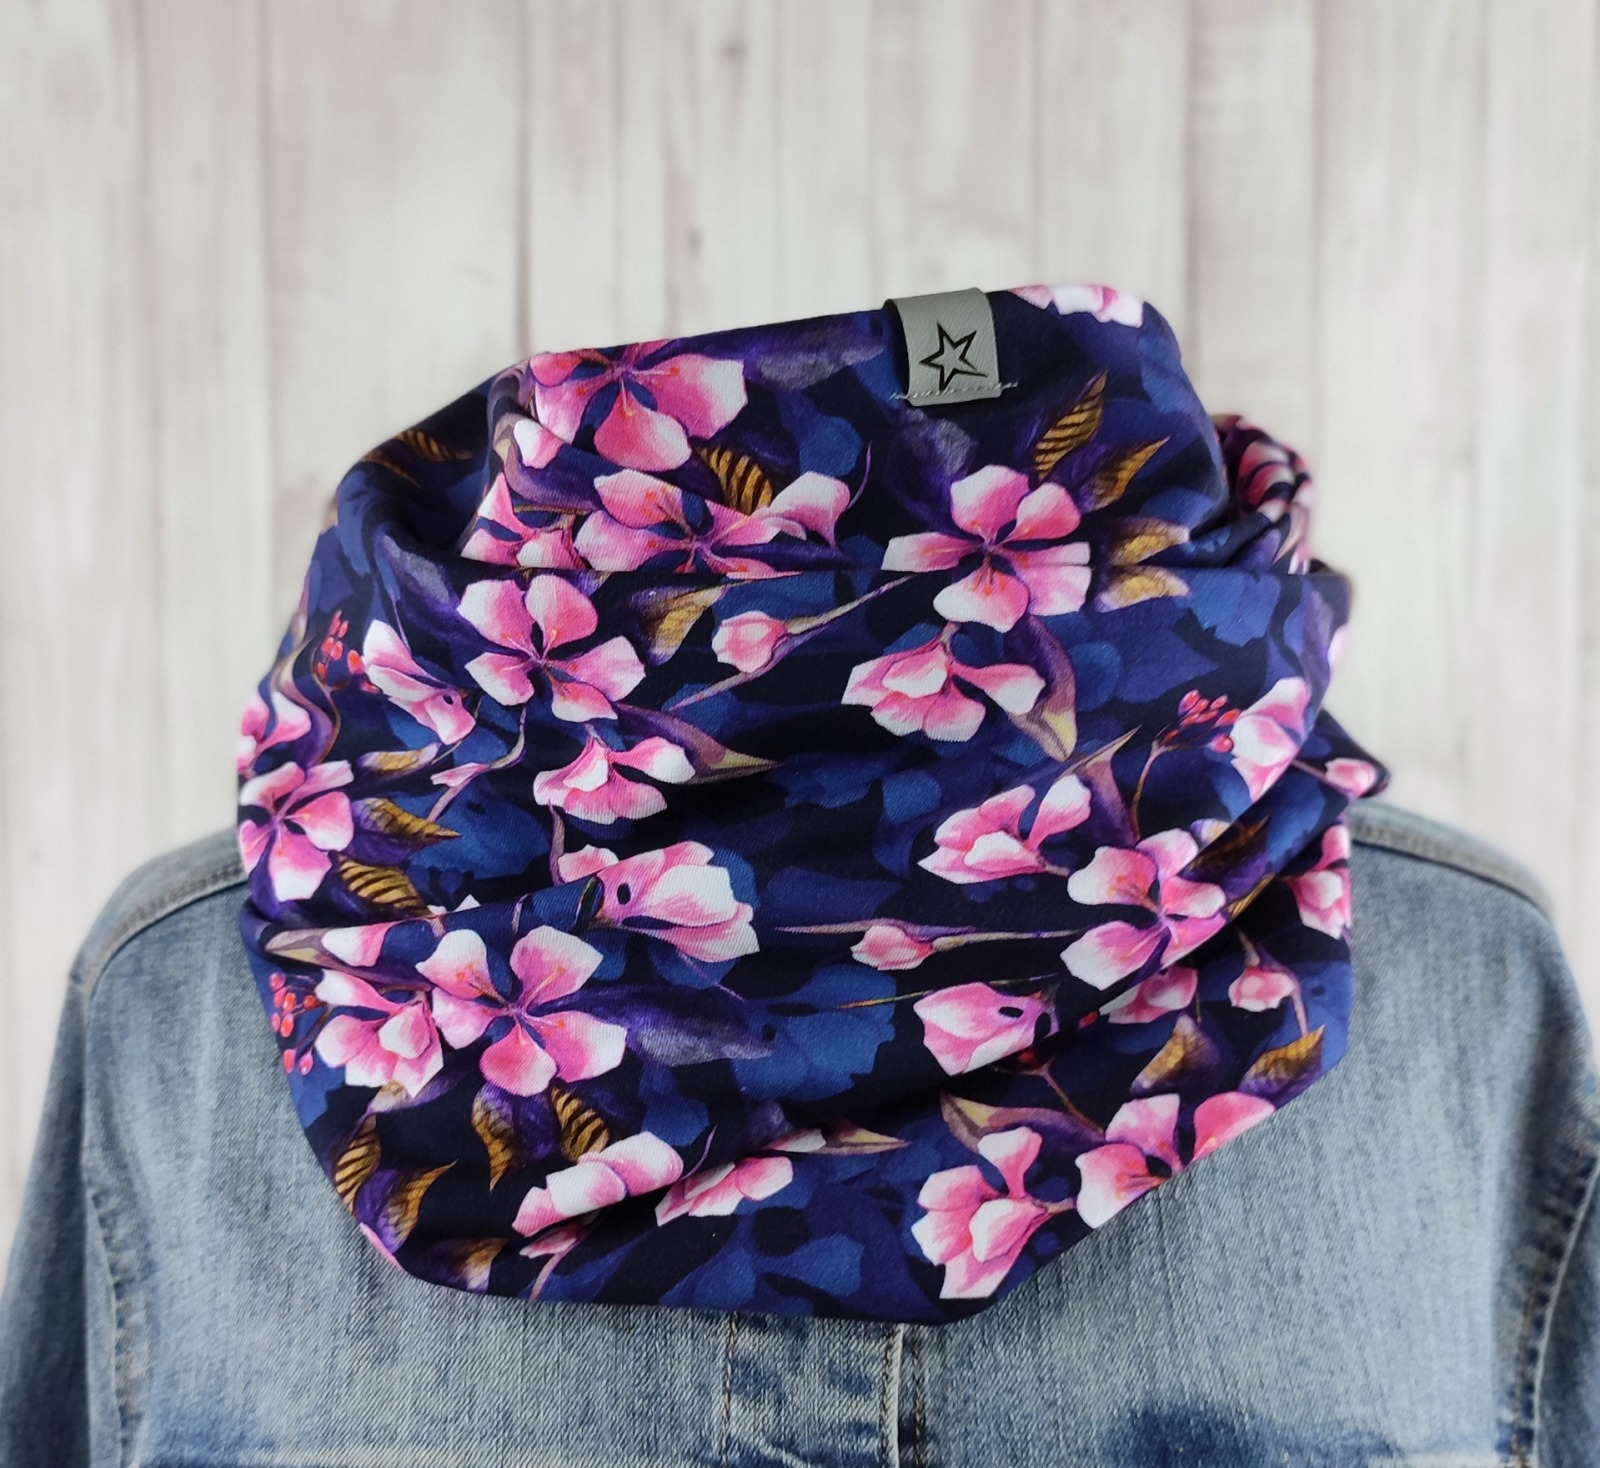 Loop Schlauchschal dunkelblau mit Hortensien in pink - Schal für Damen 2